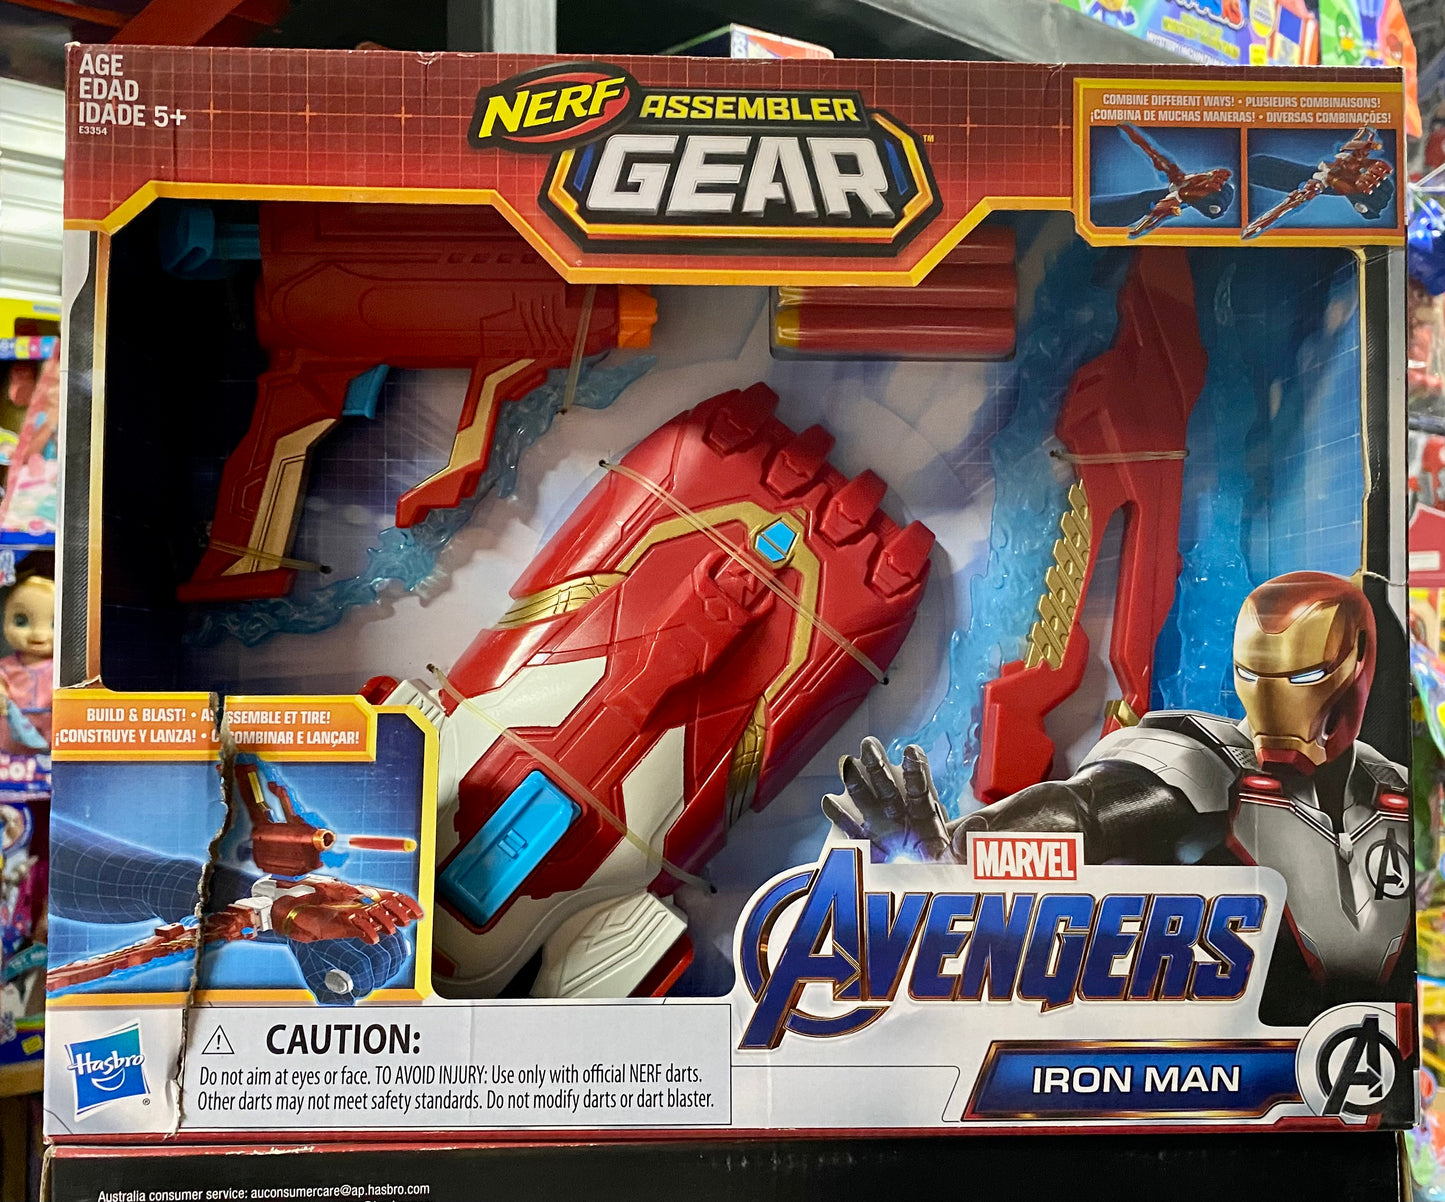 Nerf Assembler Gear Marvel Avengers Iron Man Blaster